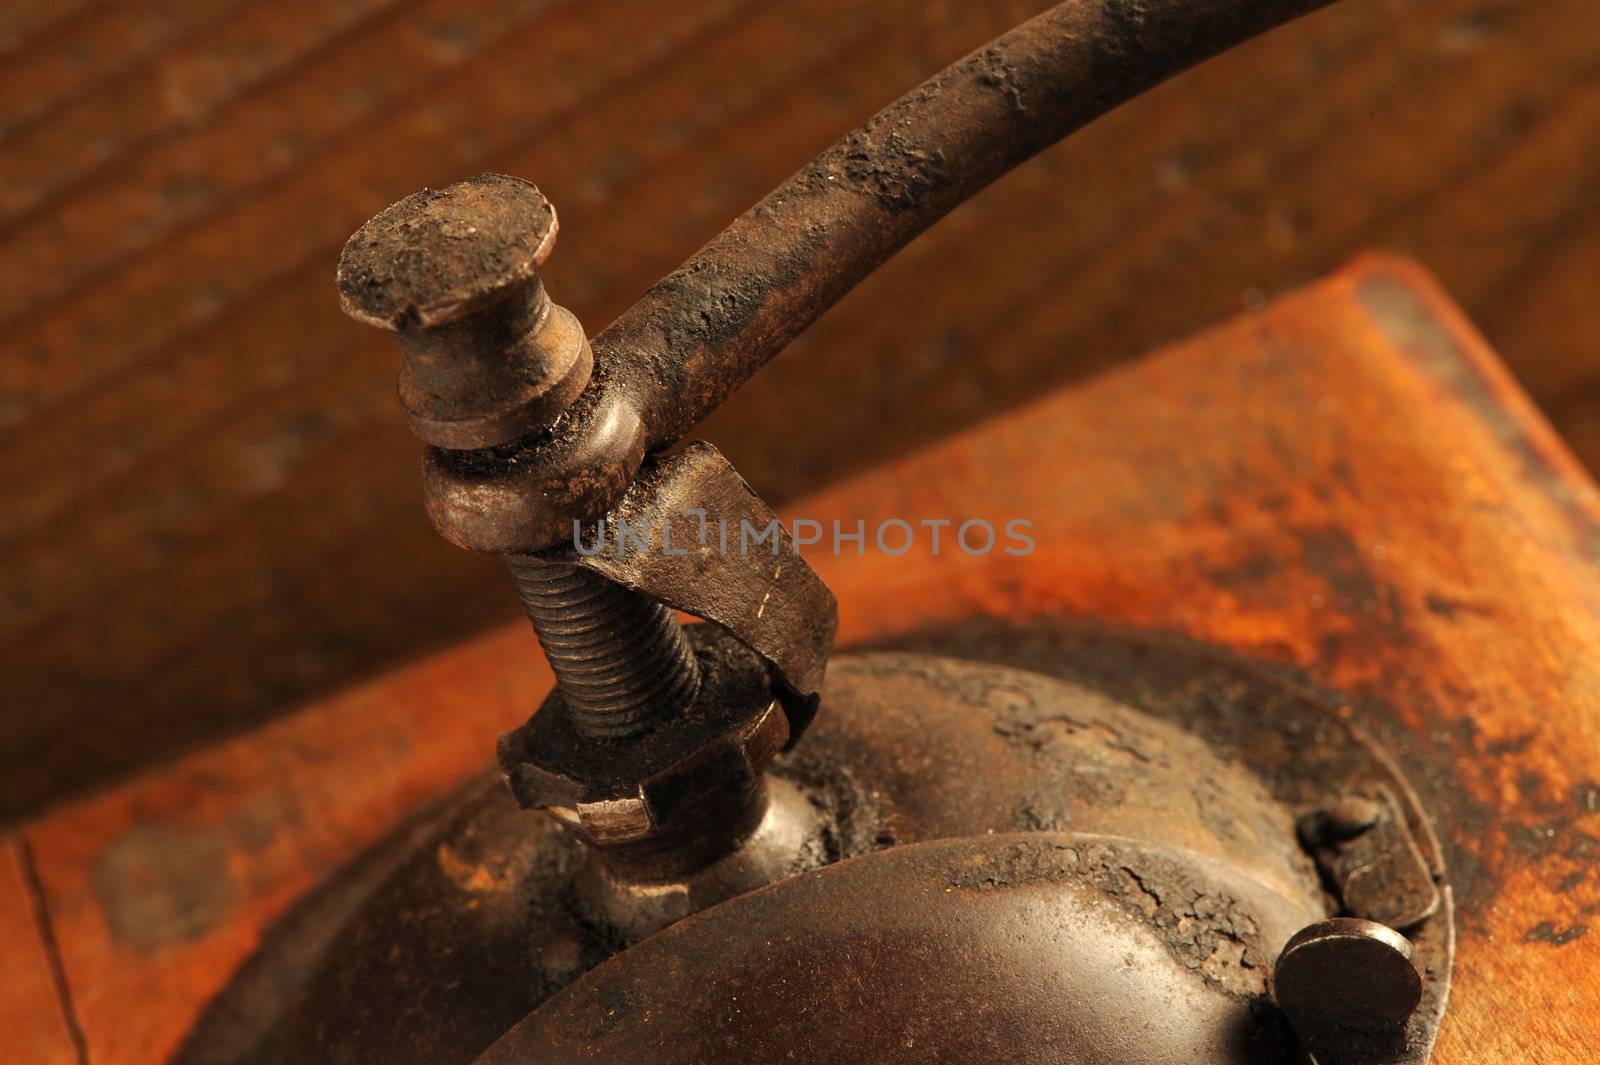 detail of Vintage manual coffee grinder